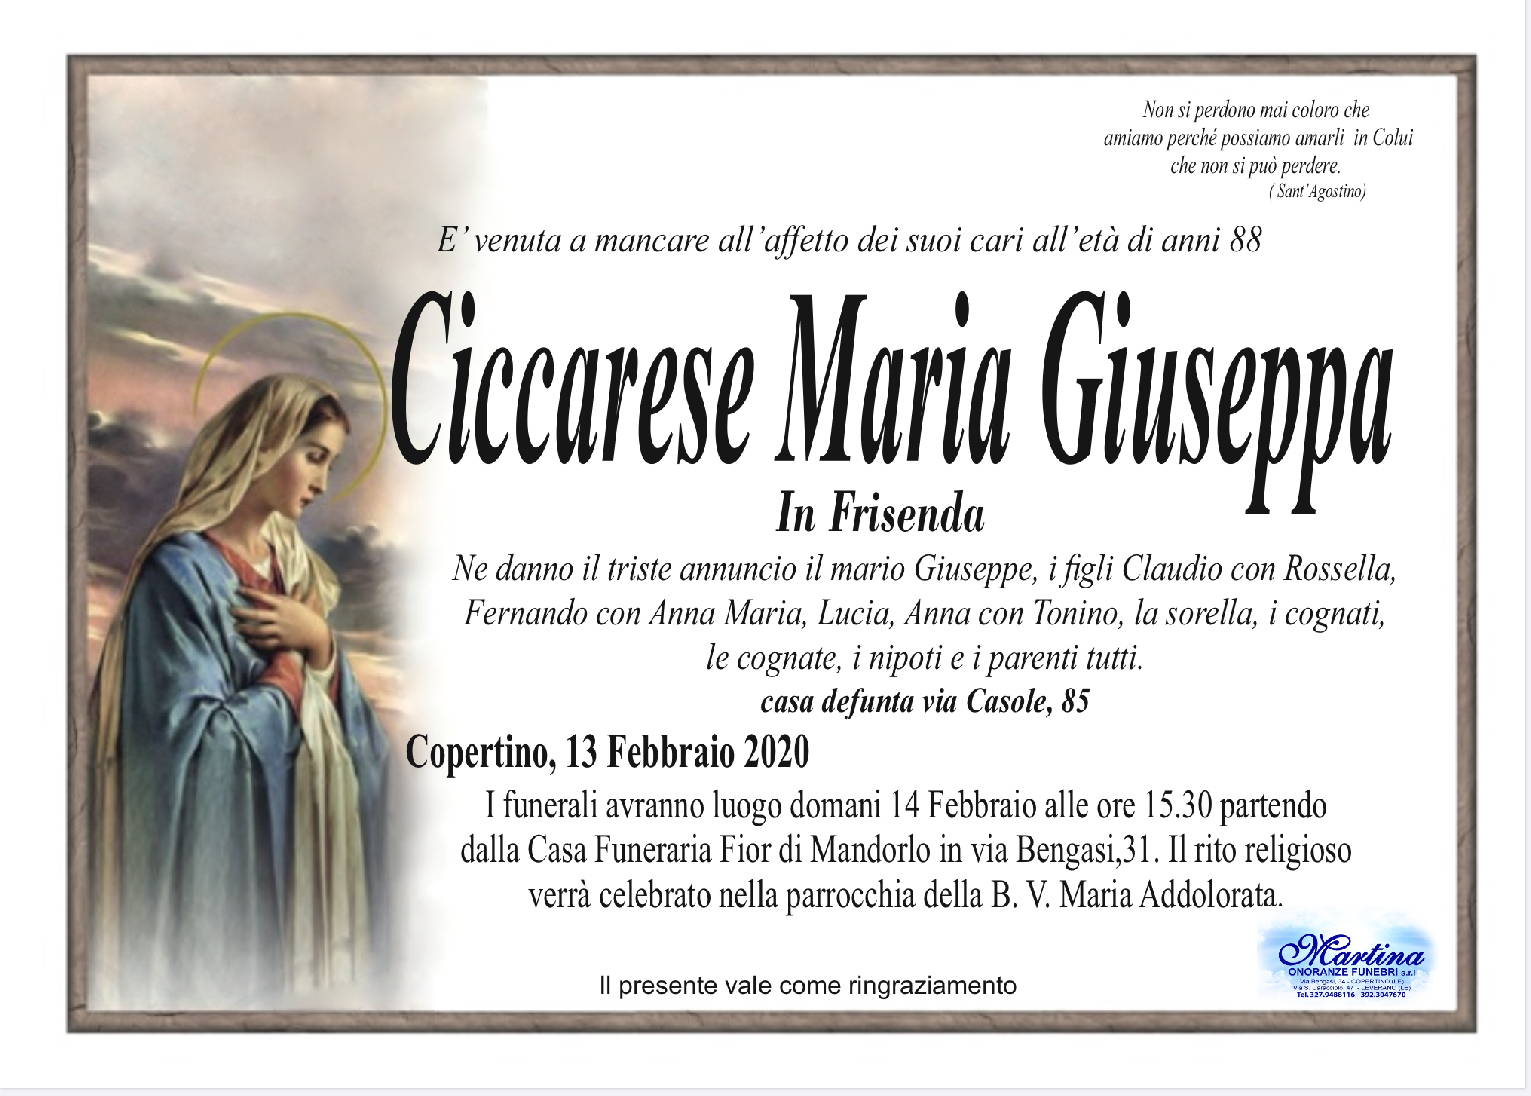 Maria Giuseppa Ciccarese